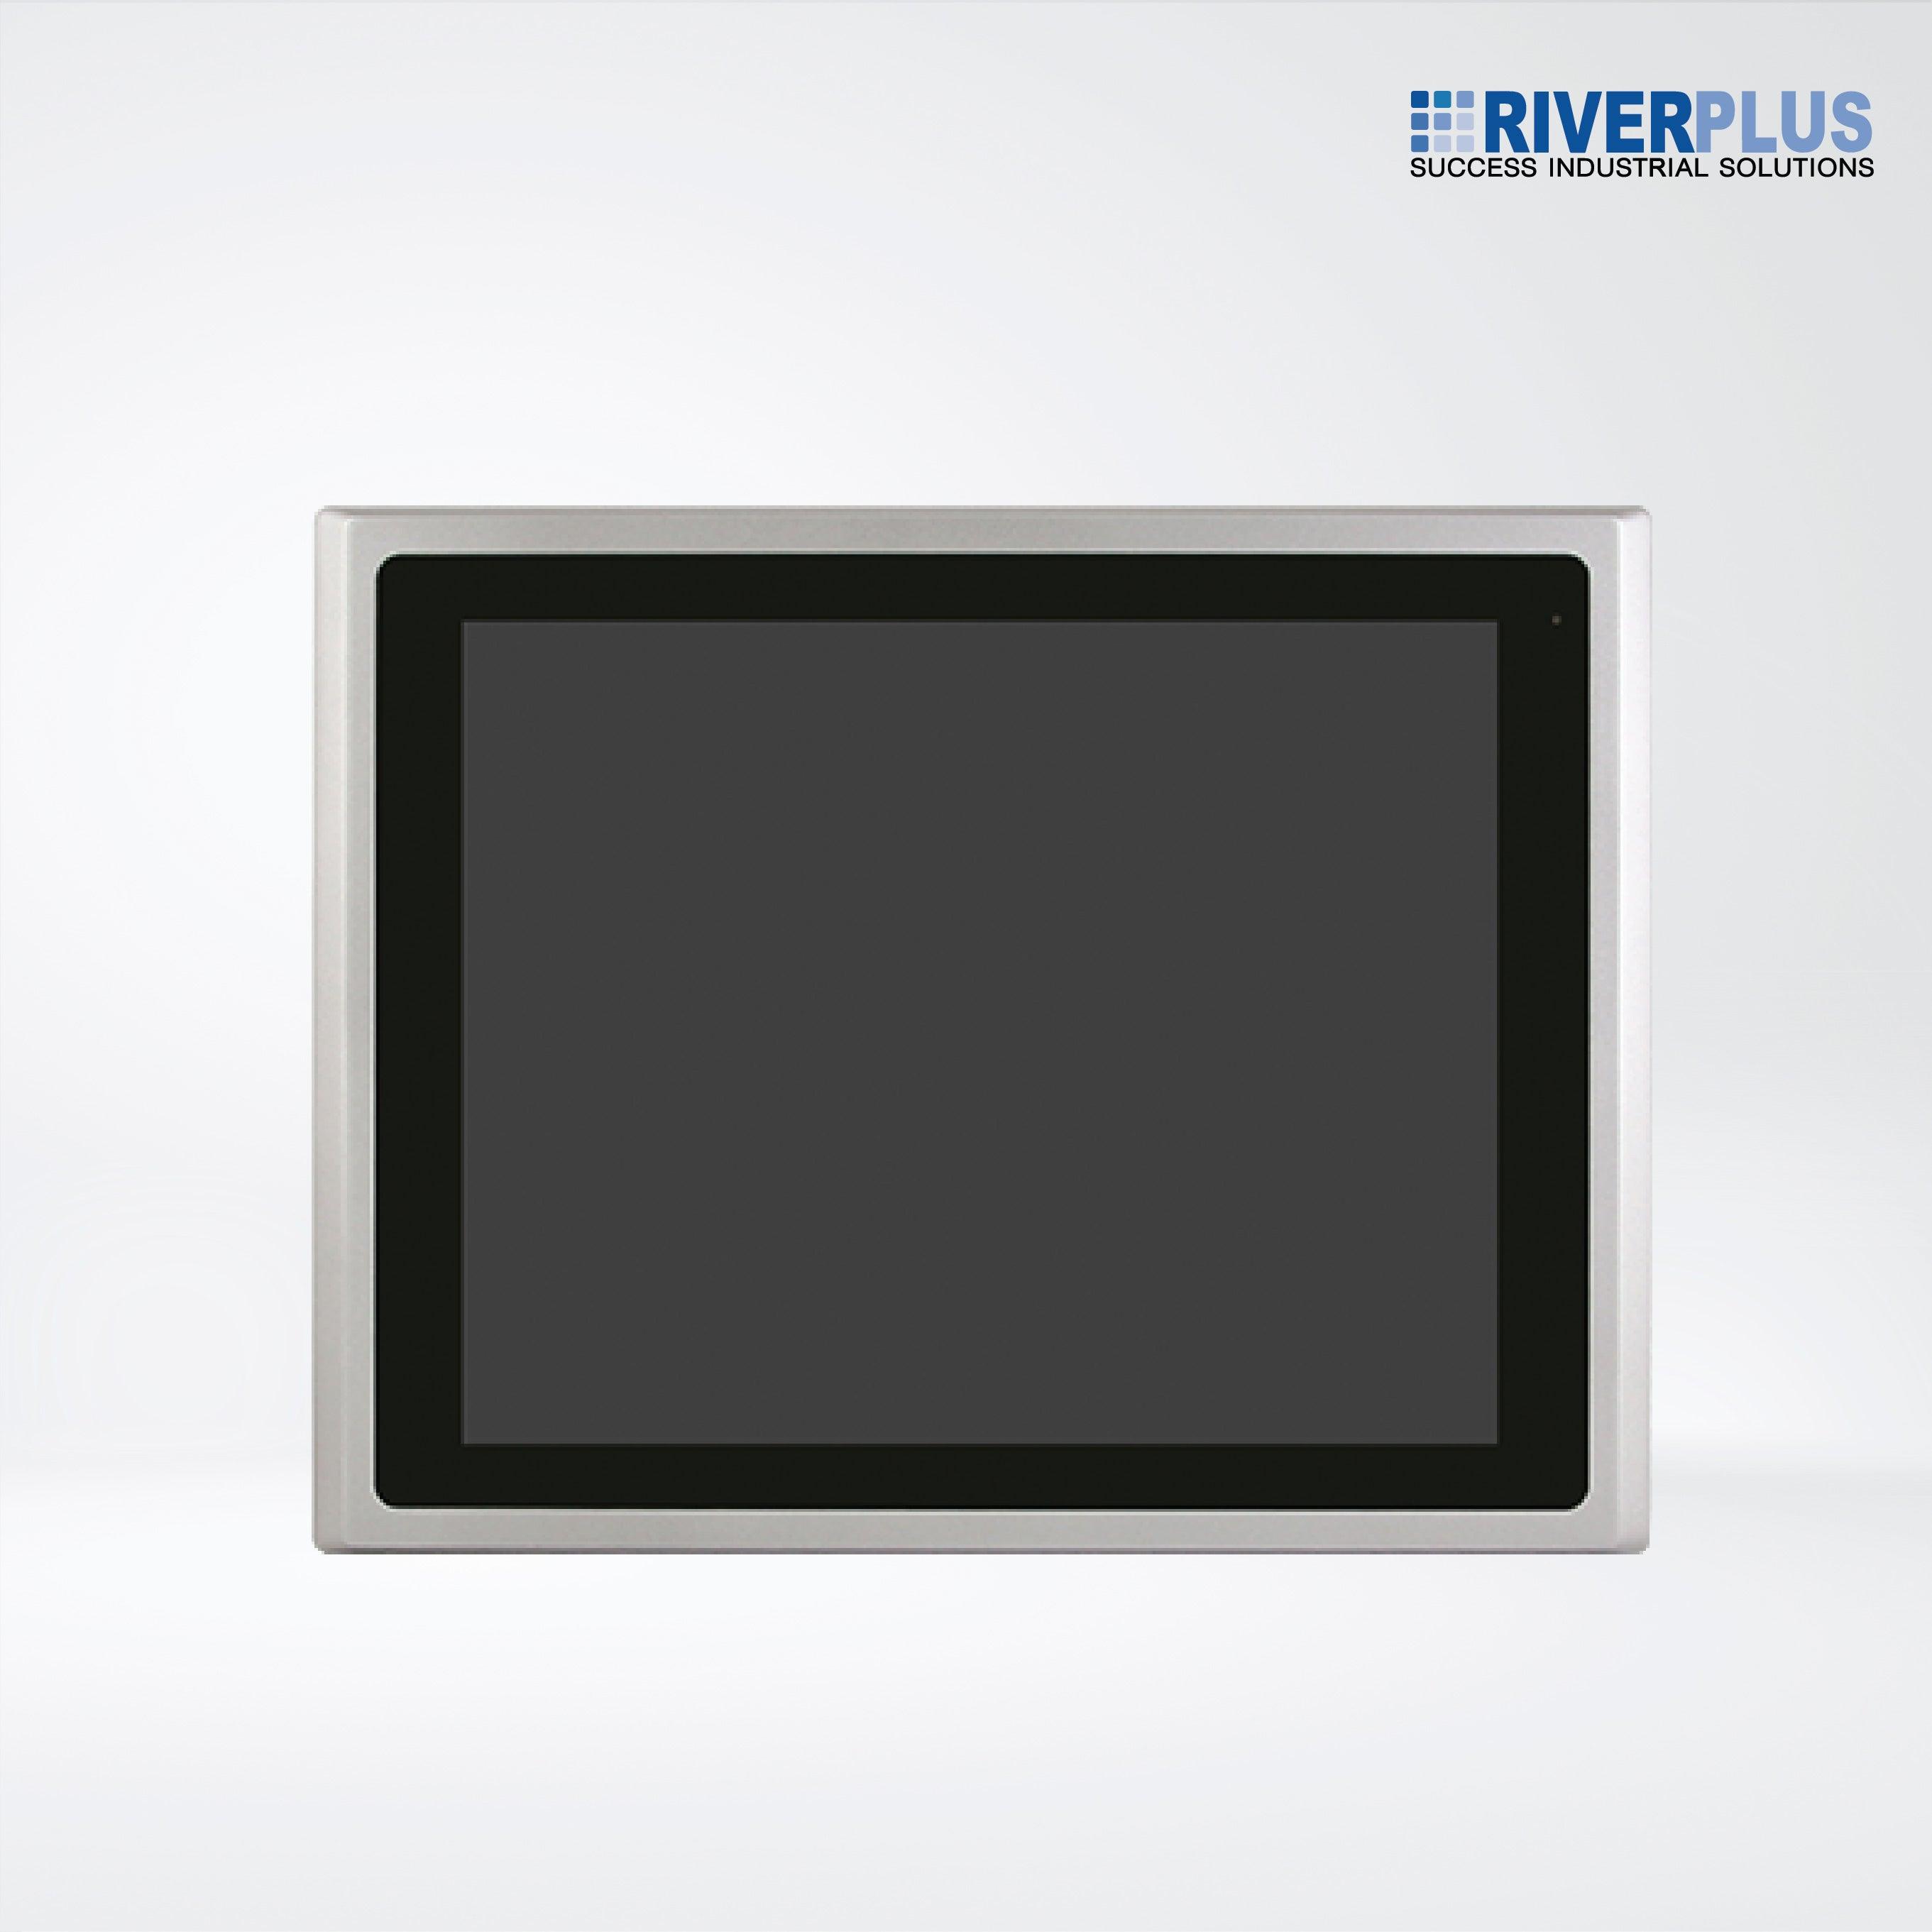 ARCHMI-817AP 17" Intel Apollo Lake N4200/N3350 Fanless Industrial Compact Size Panel PC - Riverplus